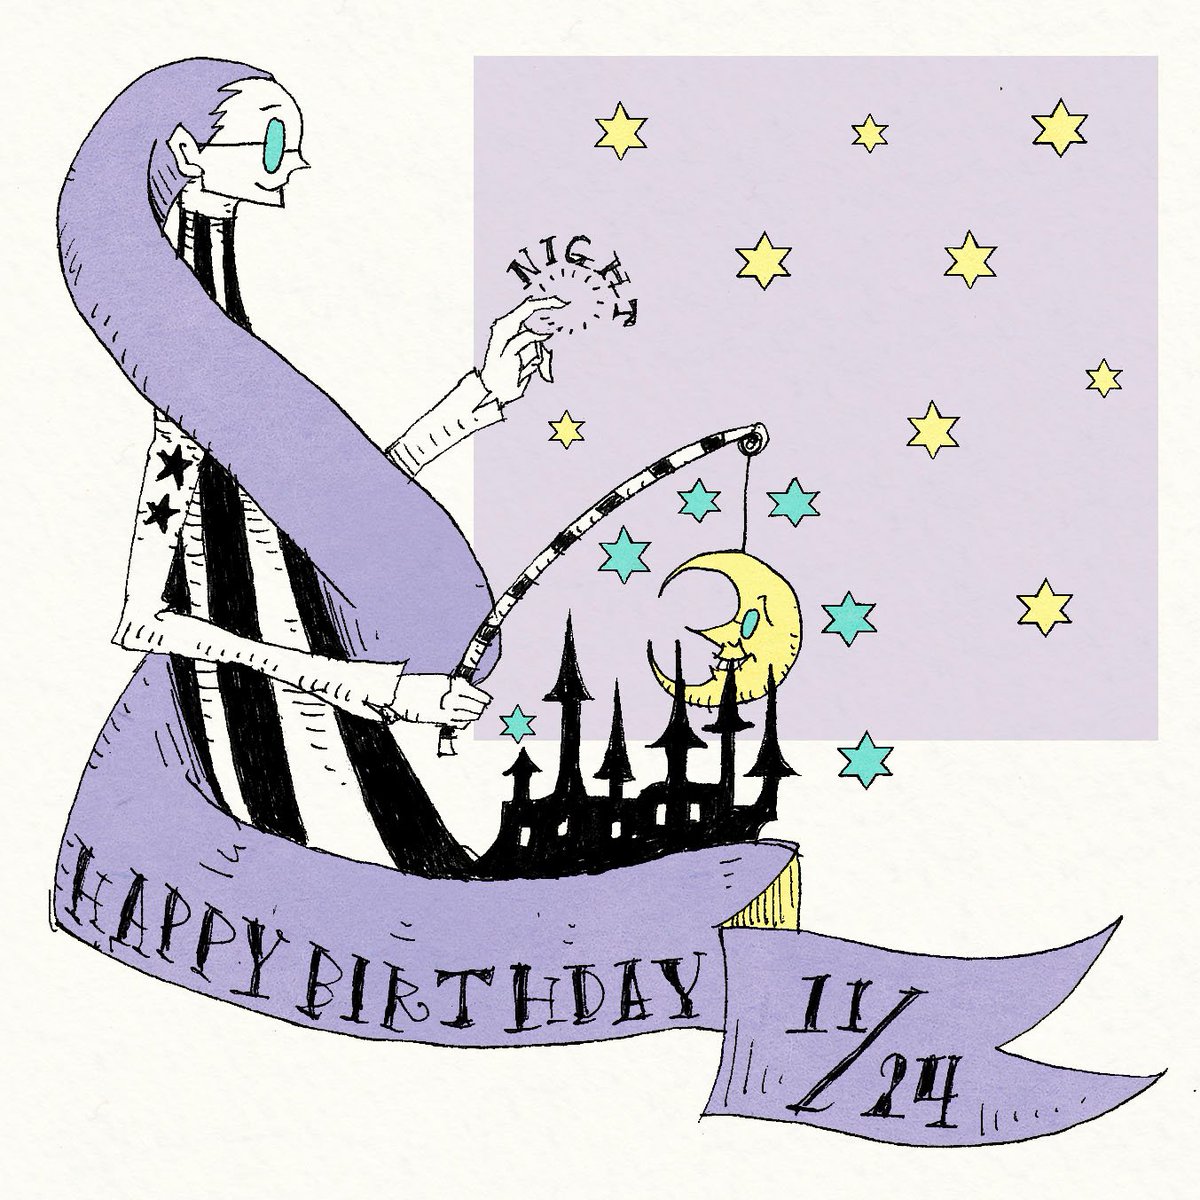 大志 على تويتر 毎日誰かの誕生日 11 24生まれの方 お誕生日おめでとうございます 11月24日生まれの方に届くと嬉しいです 誕生日 11月24日 Happybirthday ボールペン画 イラスト 絵